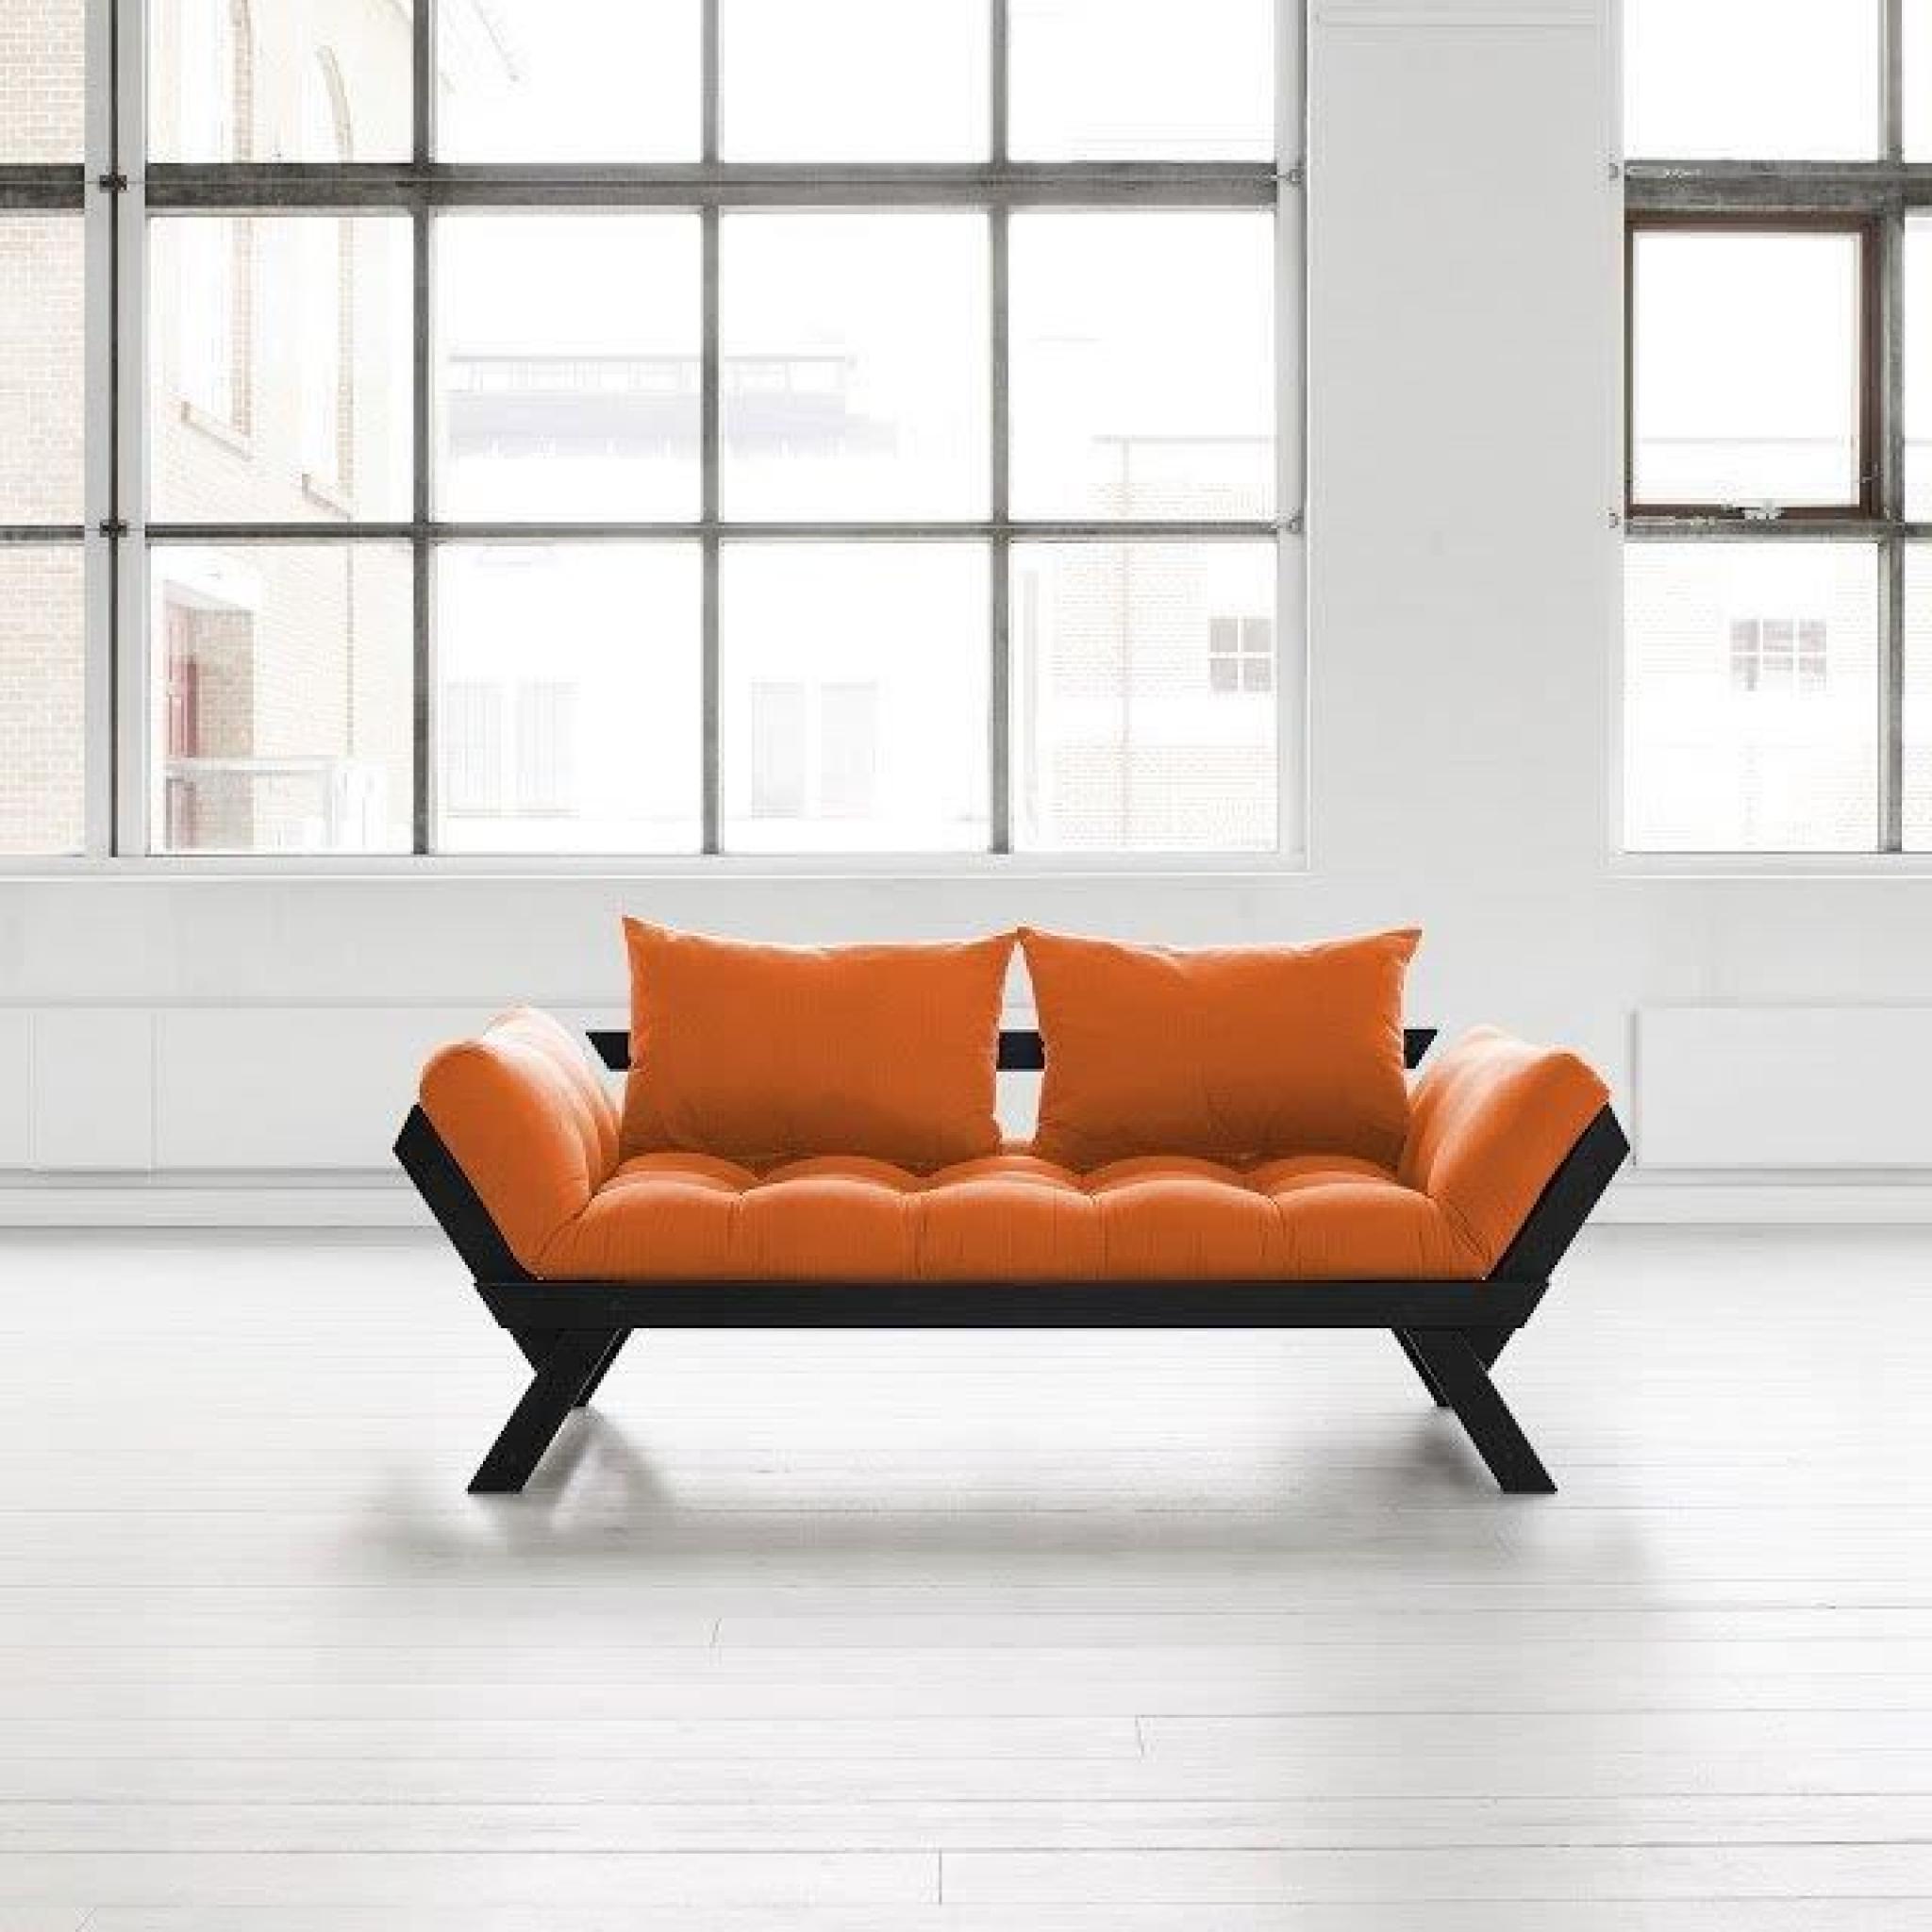 Banquette méridienne noire futon orange BEBOP couchage 75*200cm